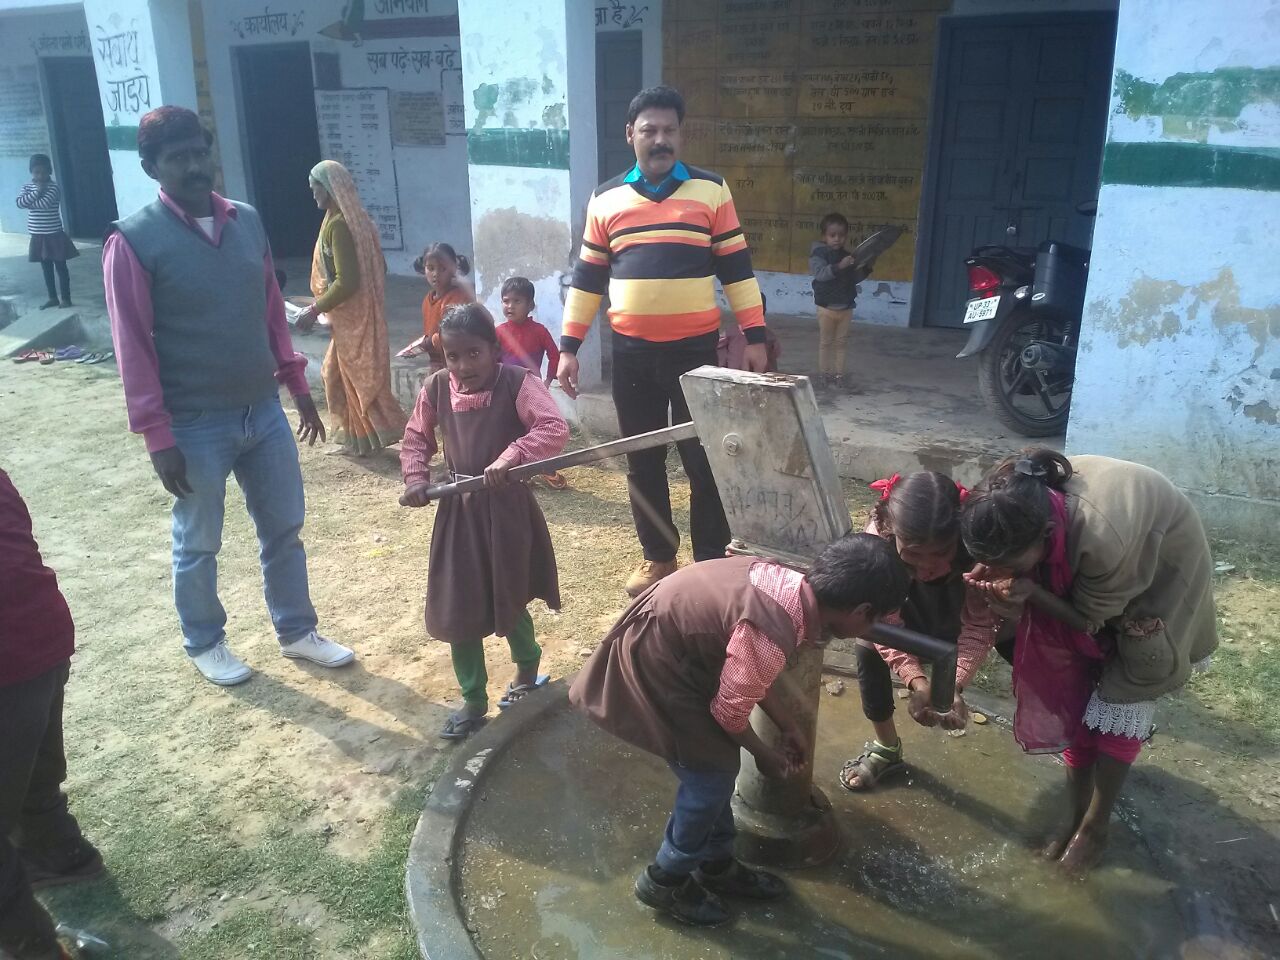 प्राइमरी एवं जूनियर विद्यालय के बच्चे पी रहे हैं दूषित पानी, दूषित पानी से बच्चों का स्वास्थ्य खतरे में | New India Times